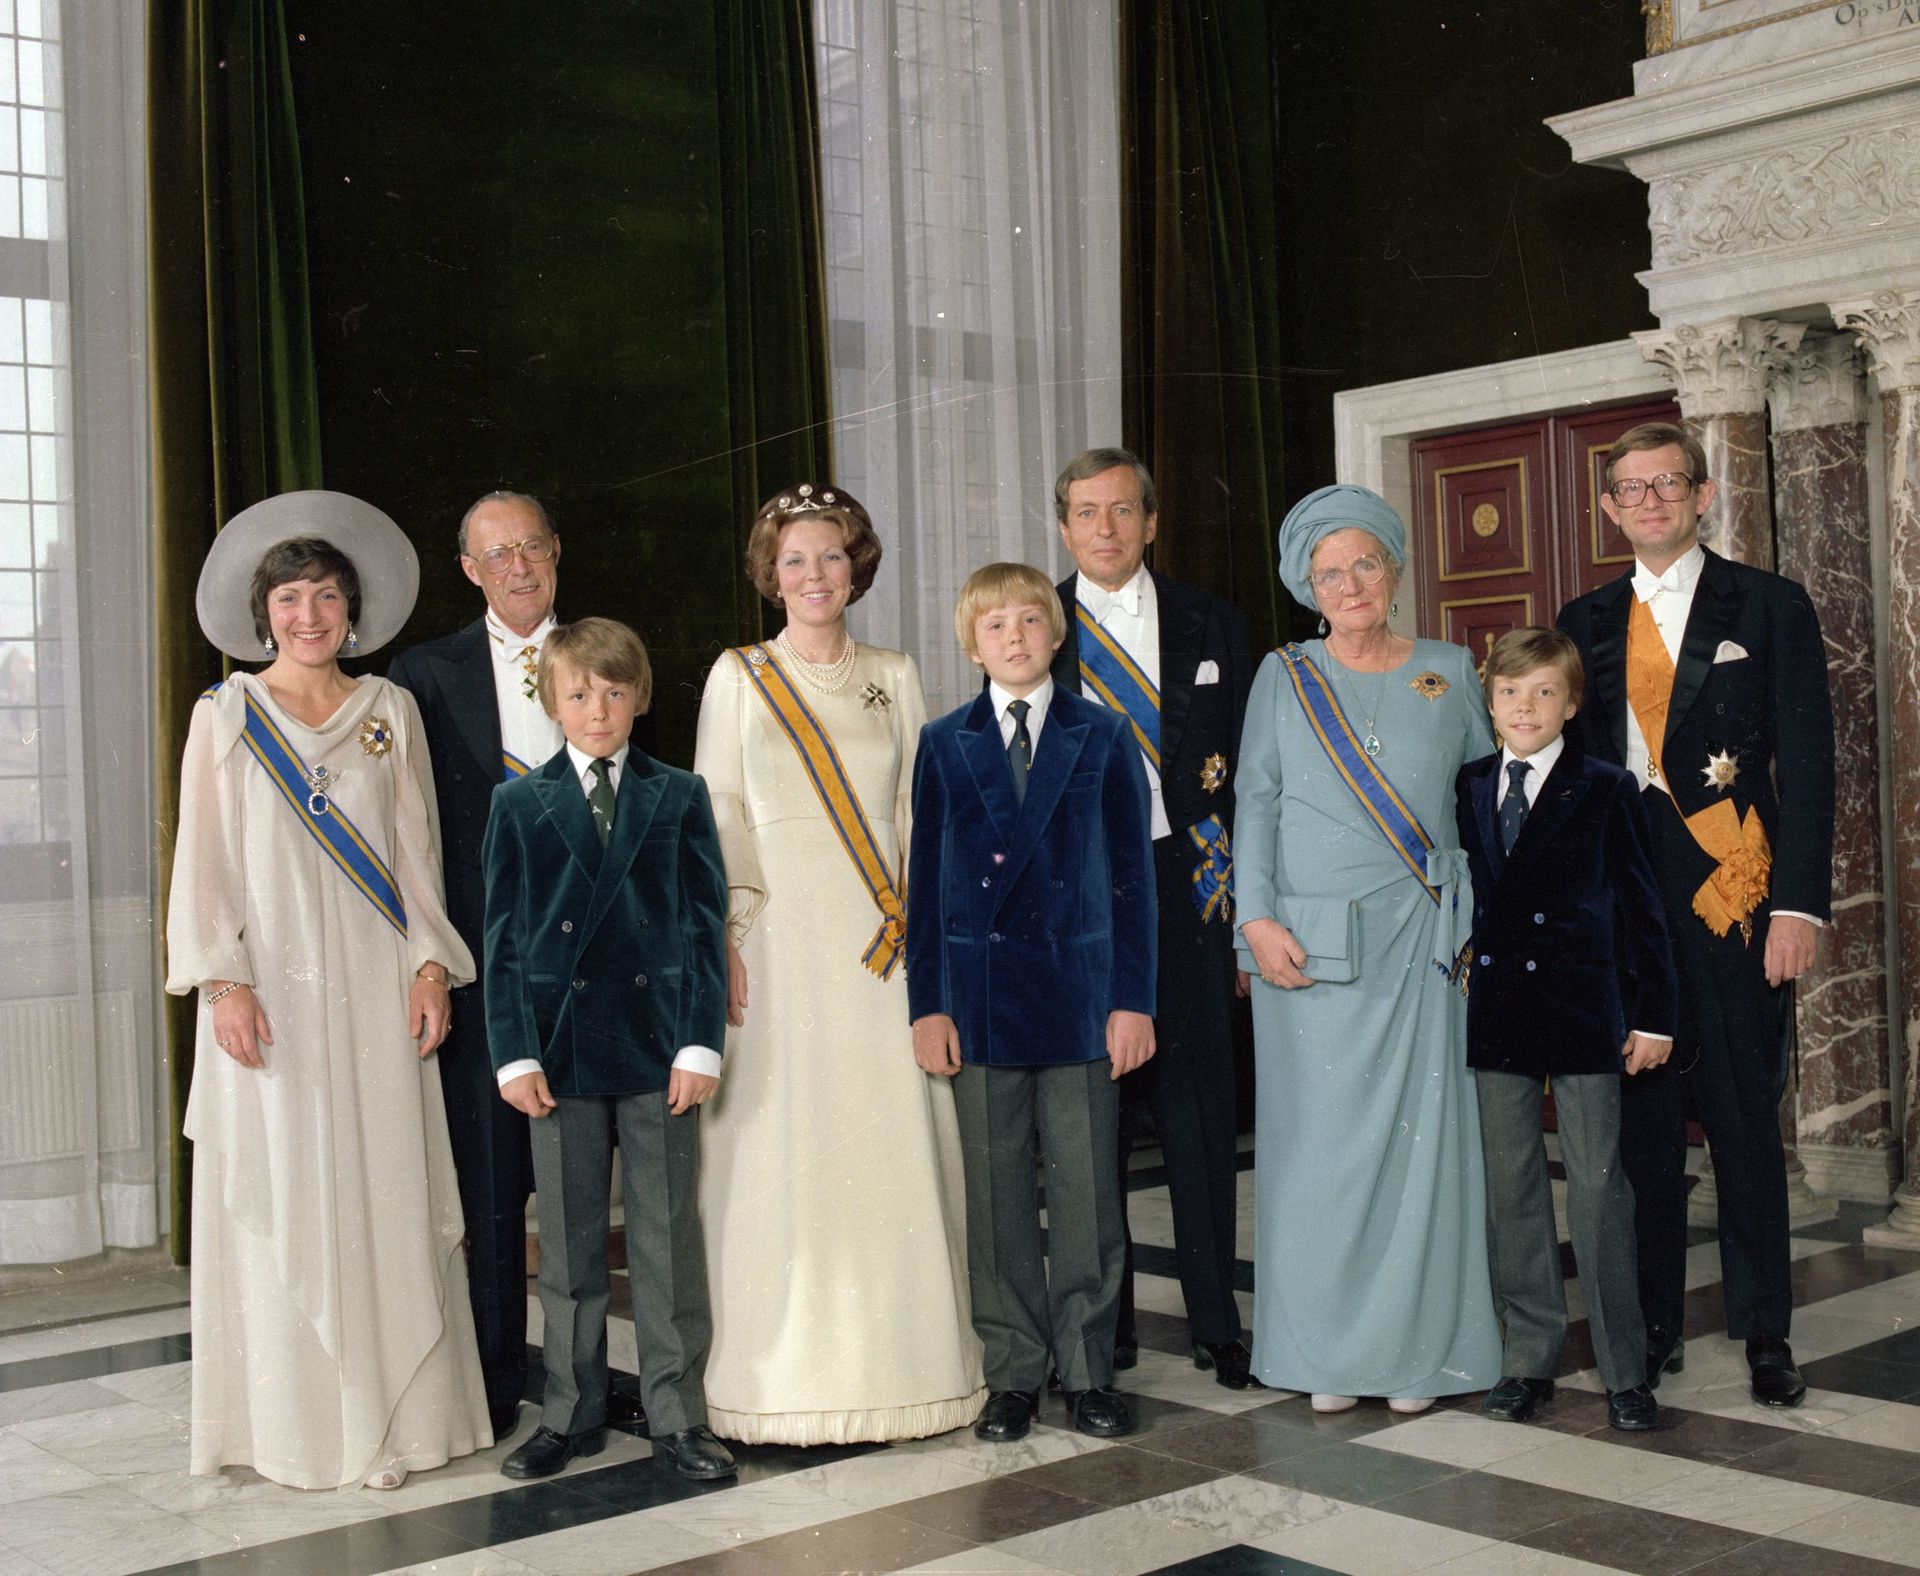 30 april 1980: Beatrix wordt koningin van Nederland. Prinses Juliana (in het blauw) slaat een arm om